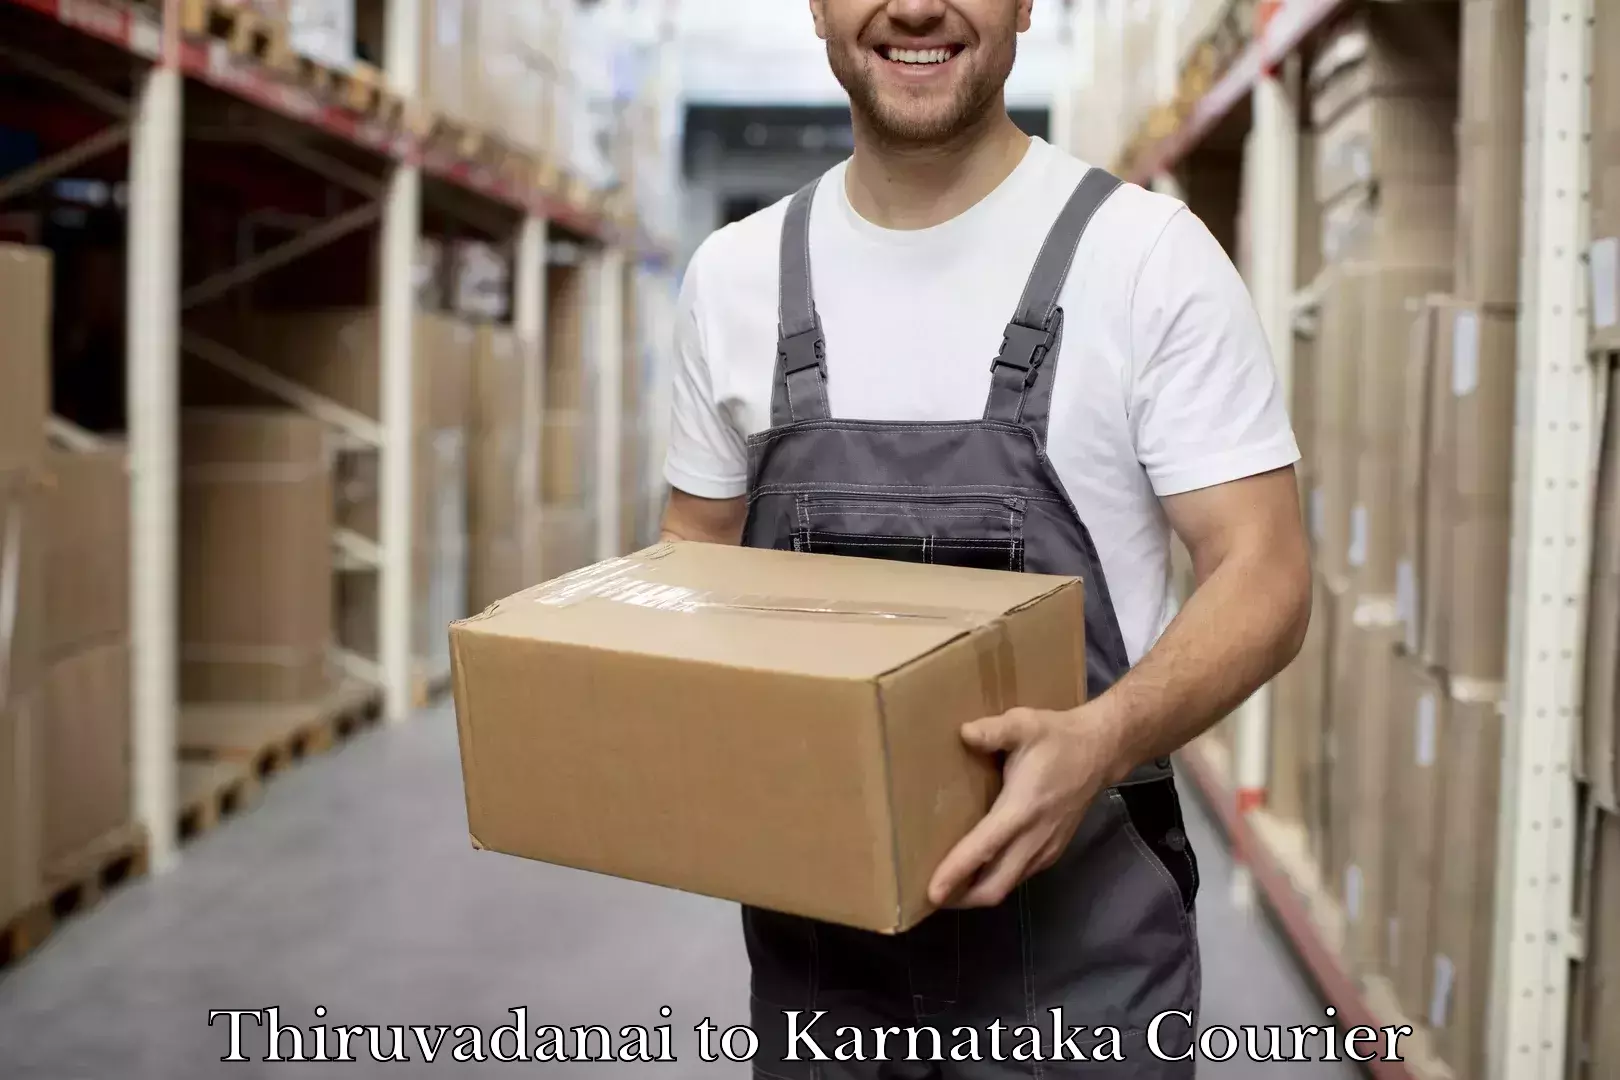 Luggage delivery app Thiruvadanai to Toranagallu